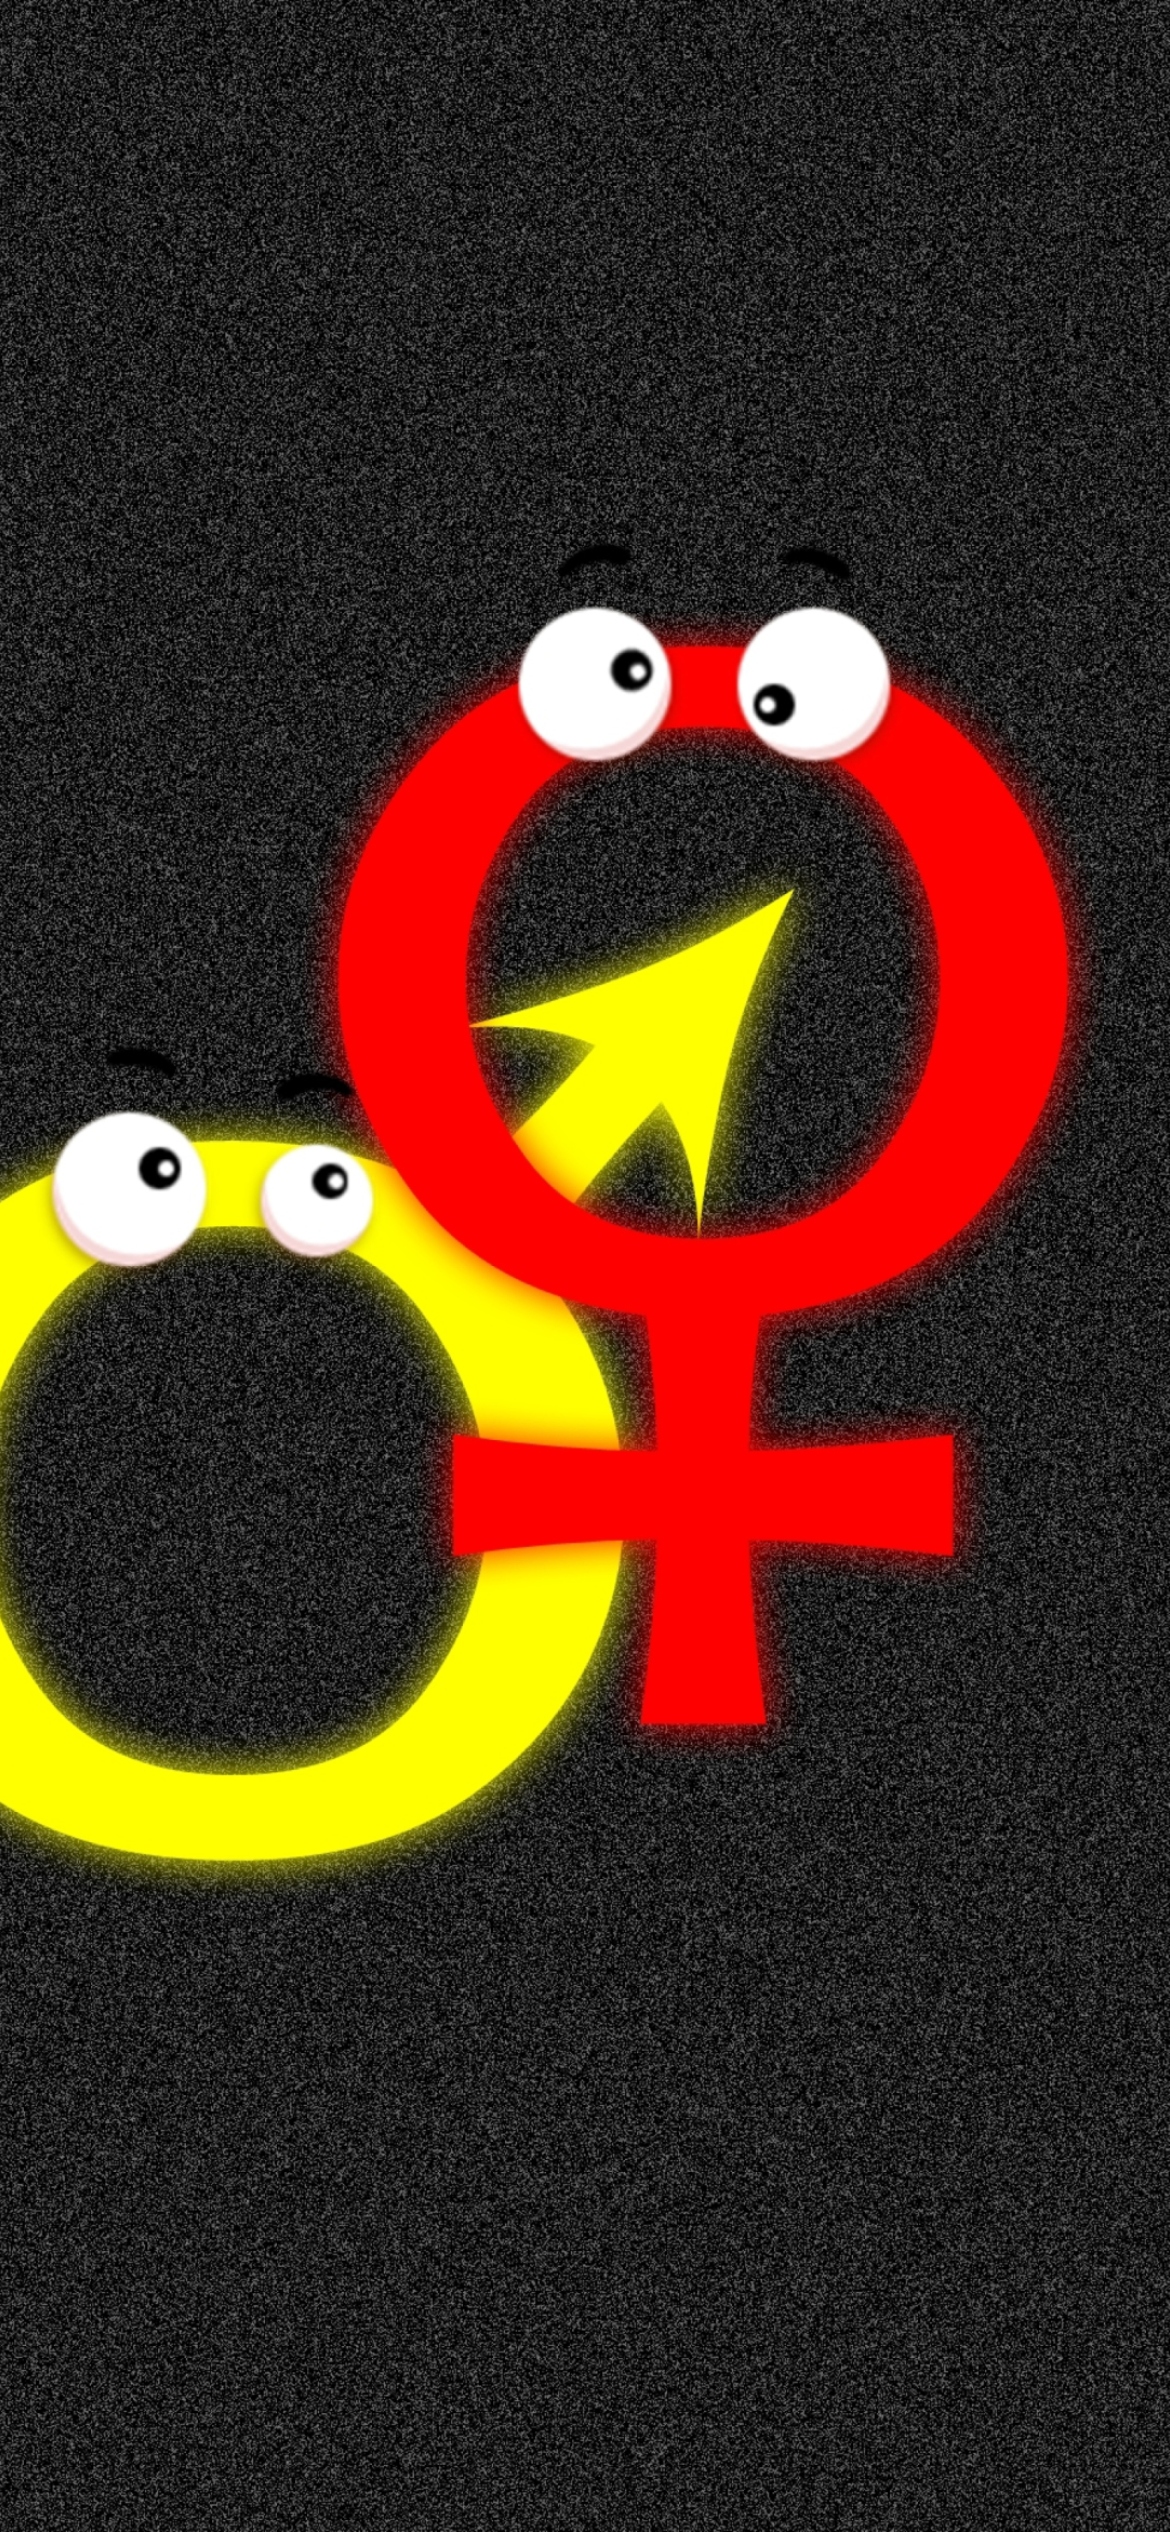 Fondo de pantalla Funny Gender Symbols 1170x2532